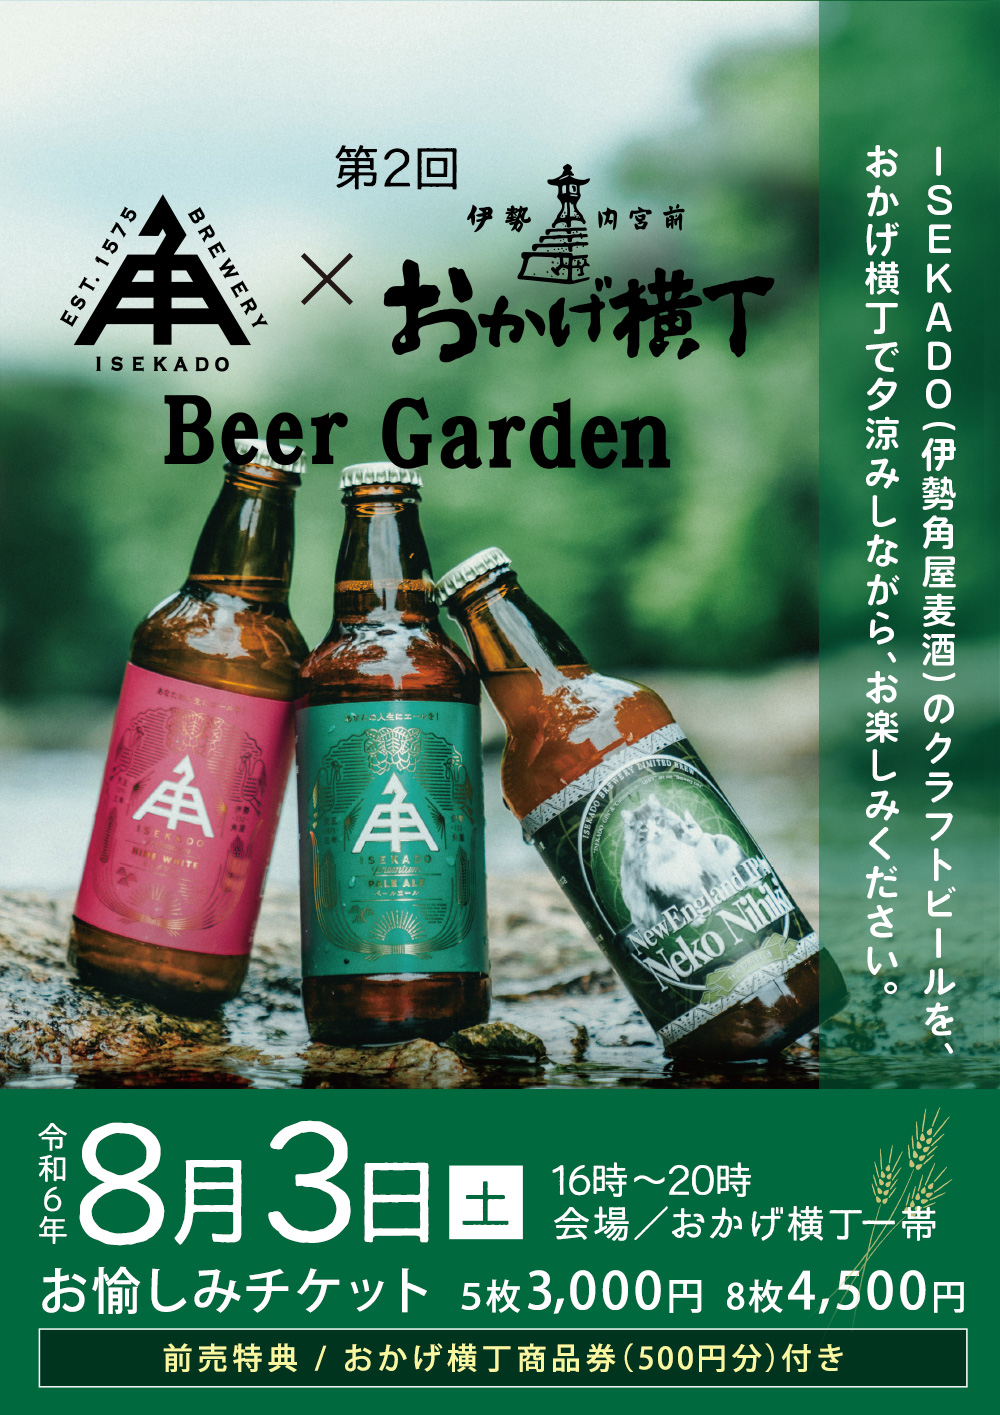 2 ISEKADOߤ Beer Garden